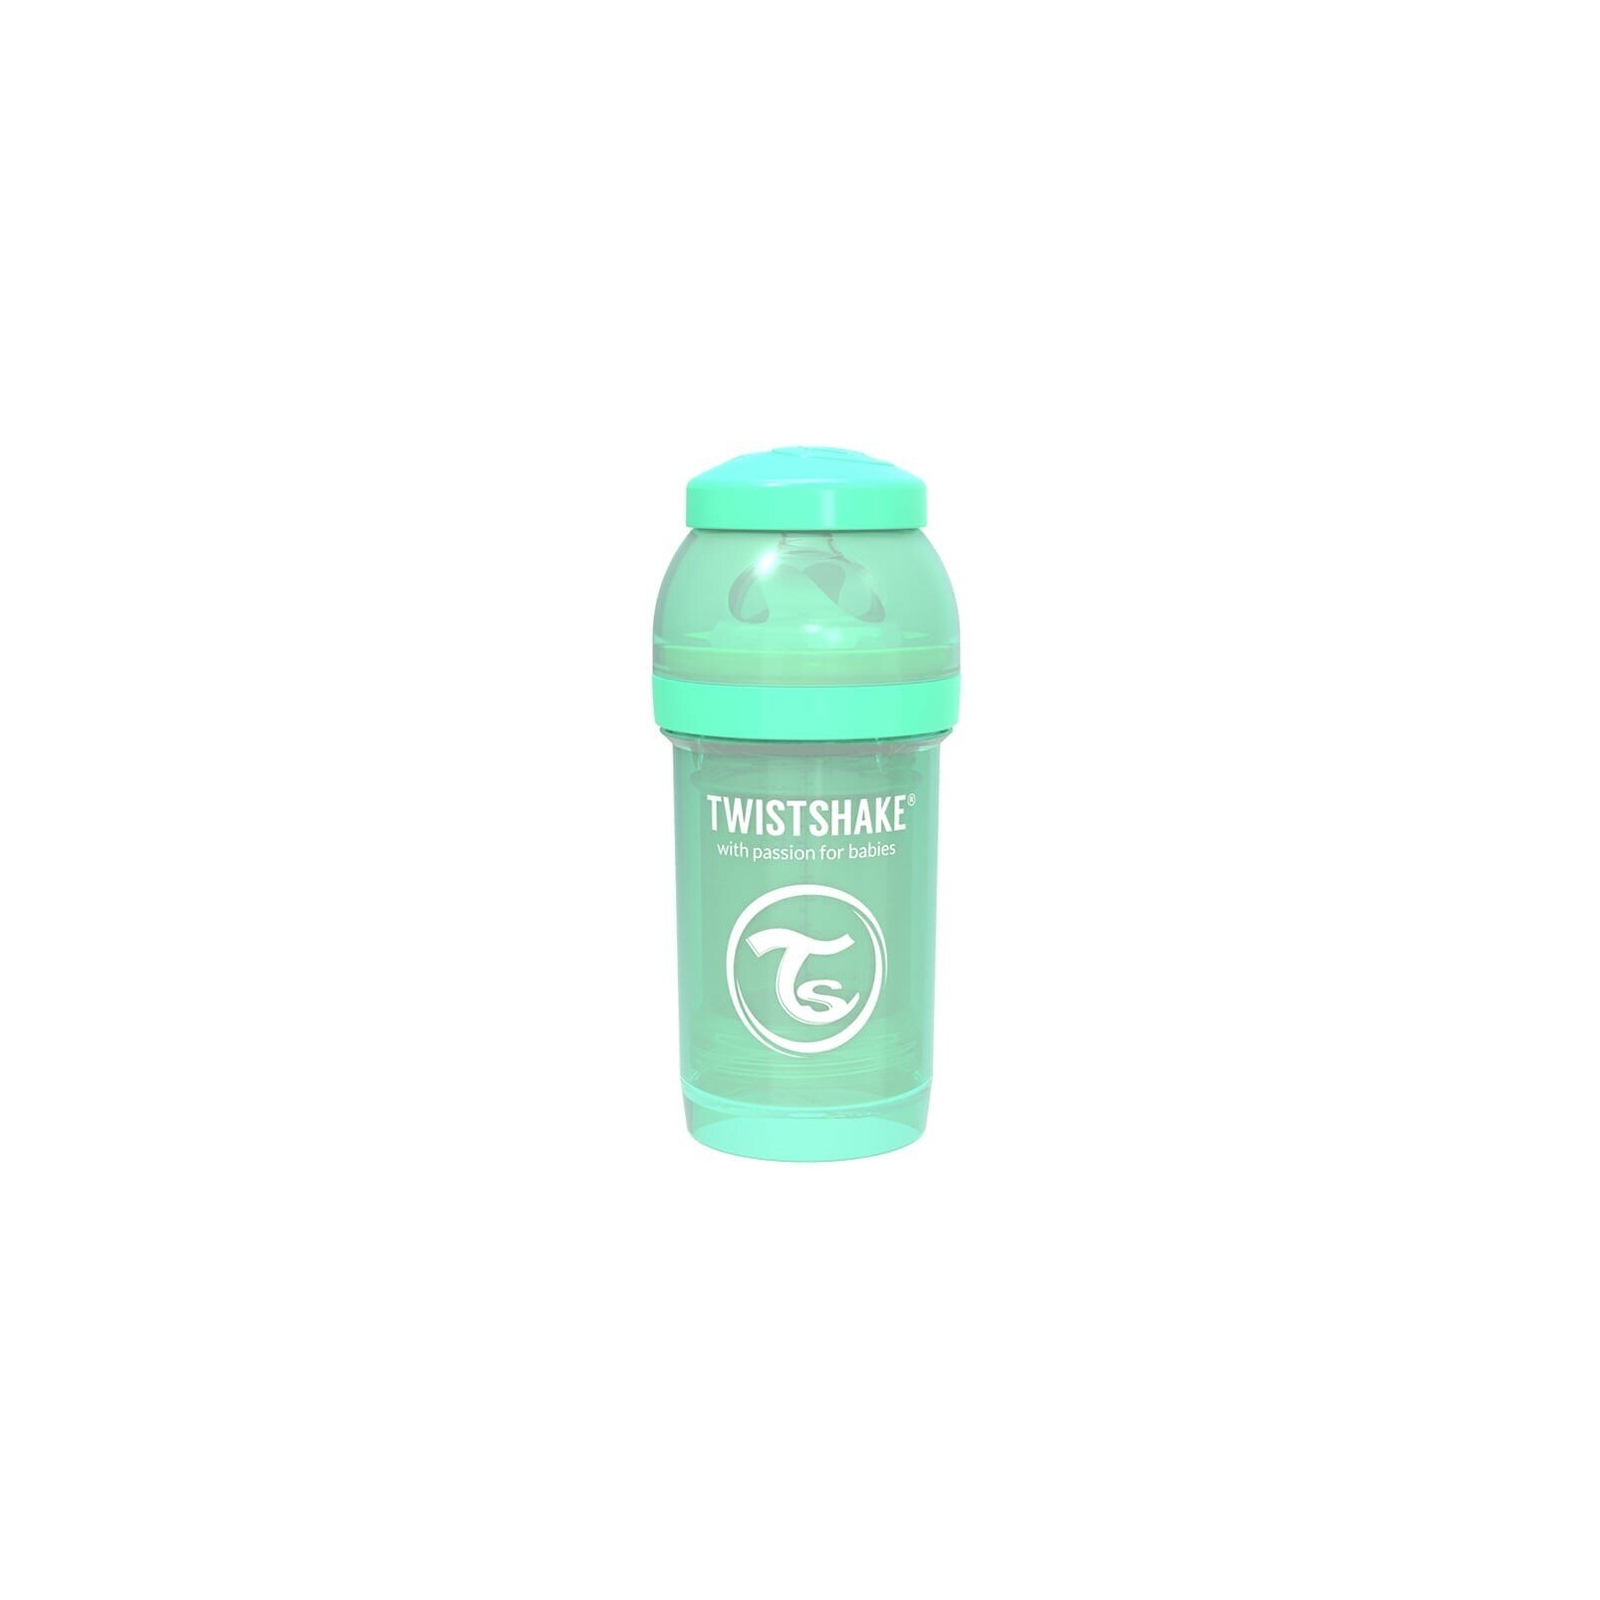 Пляшечка для годування Twistshake антиколькова 180 мл, світло-блакитна (69857/78250)